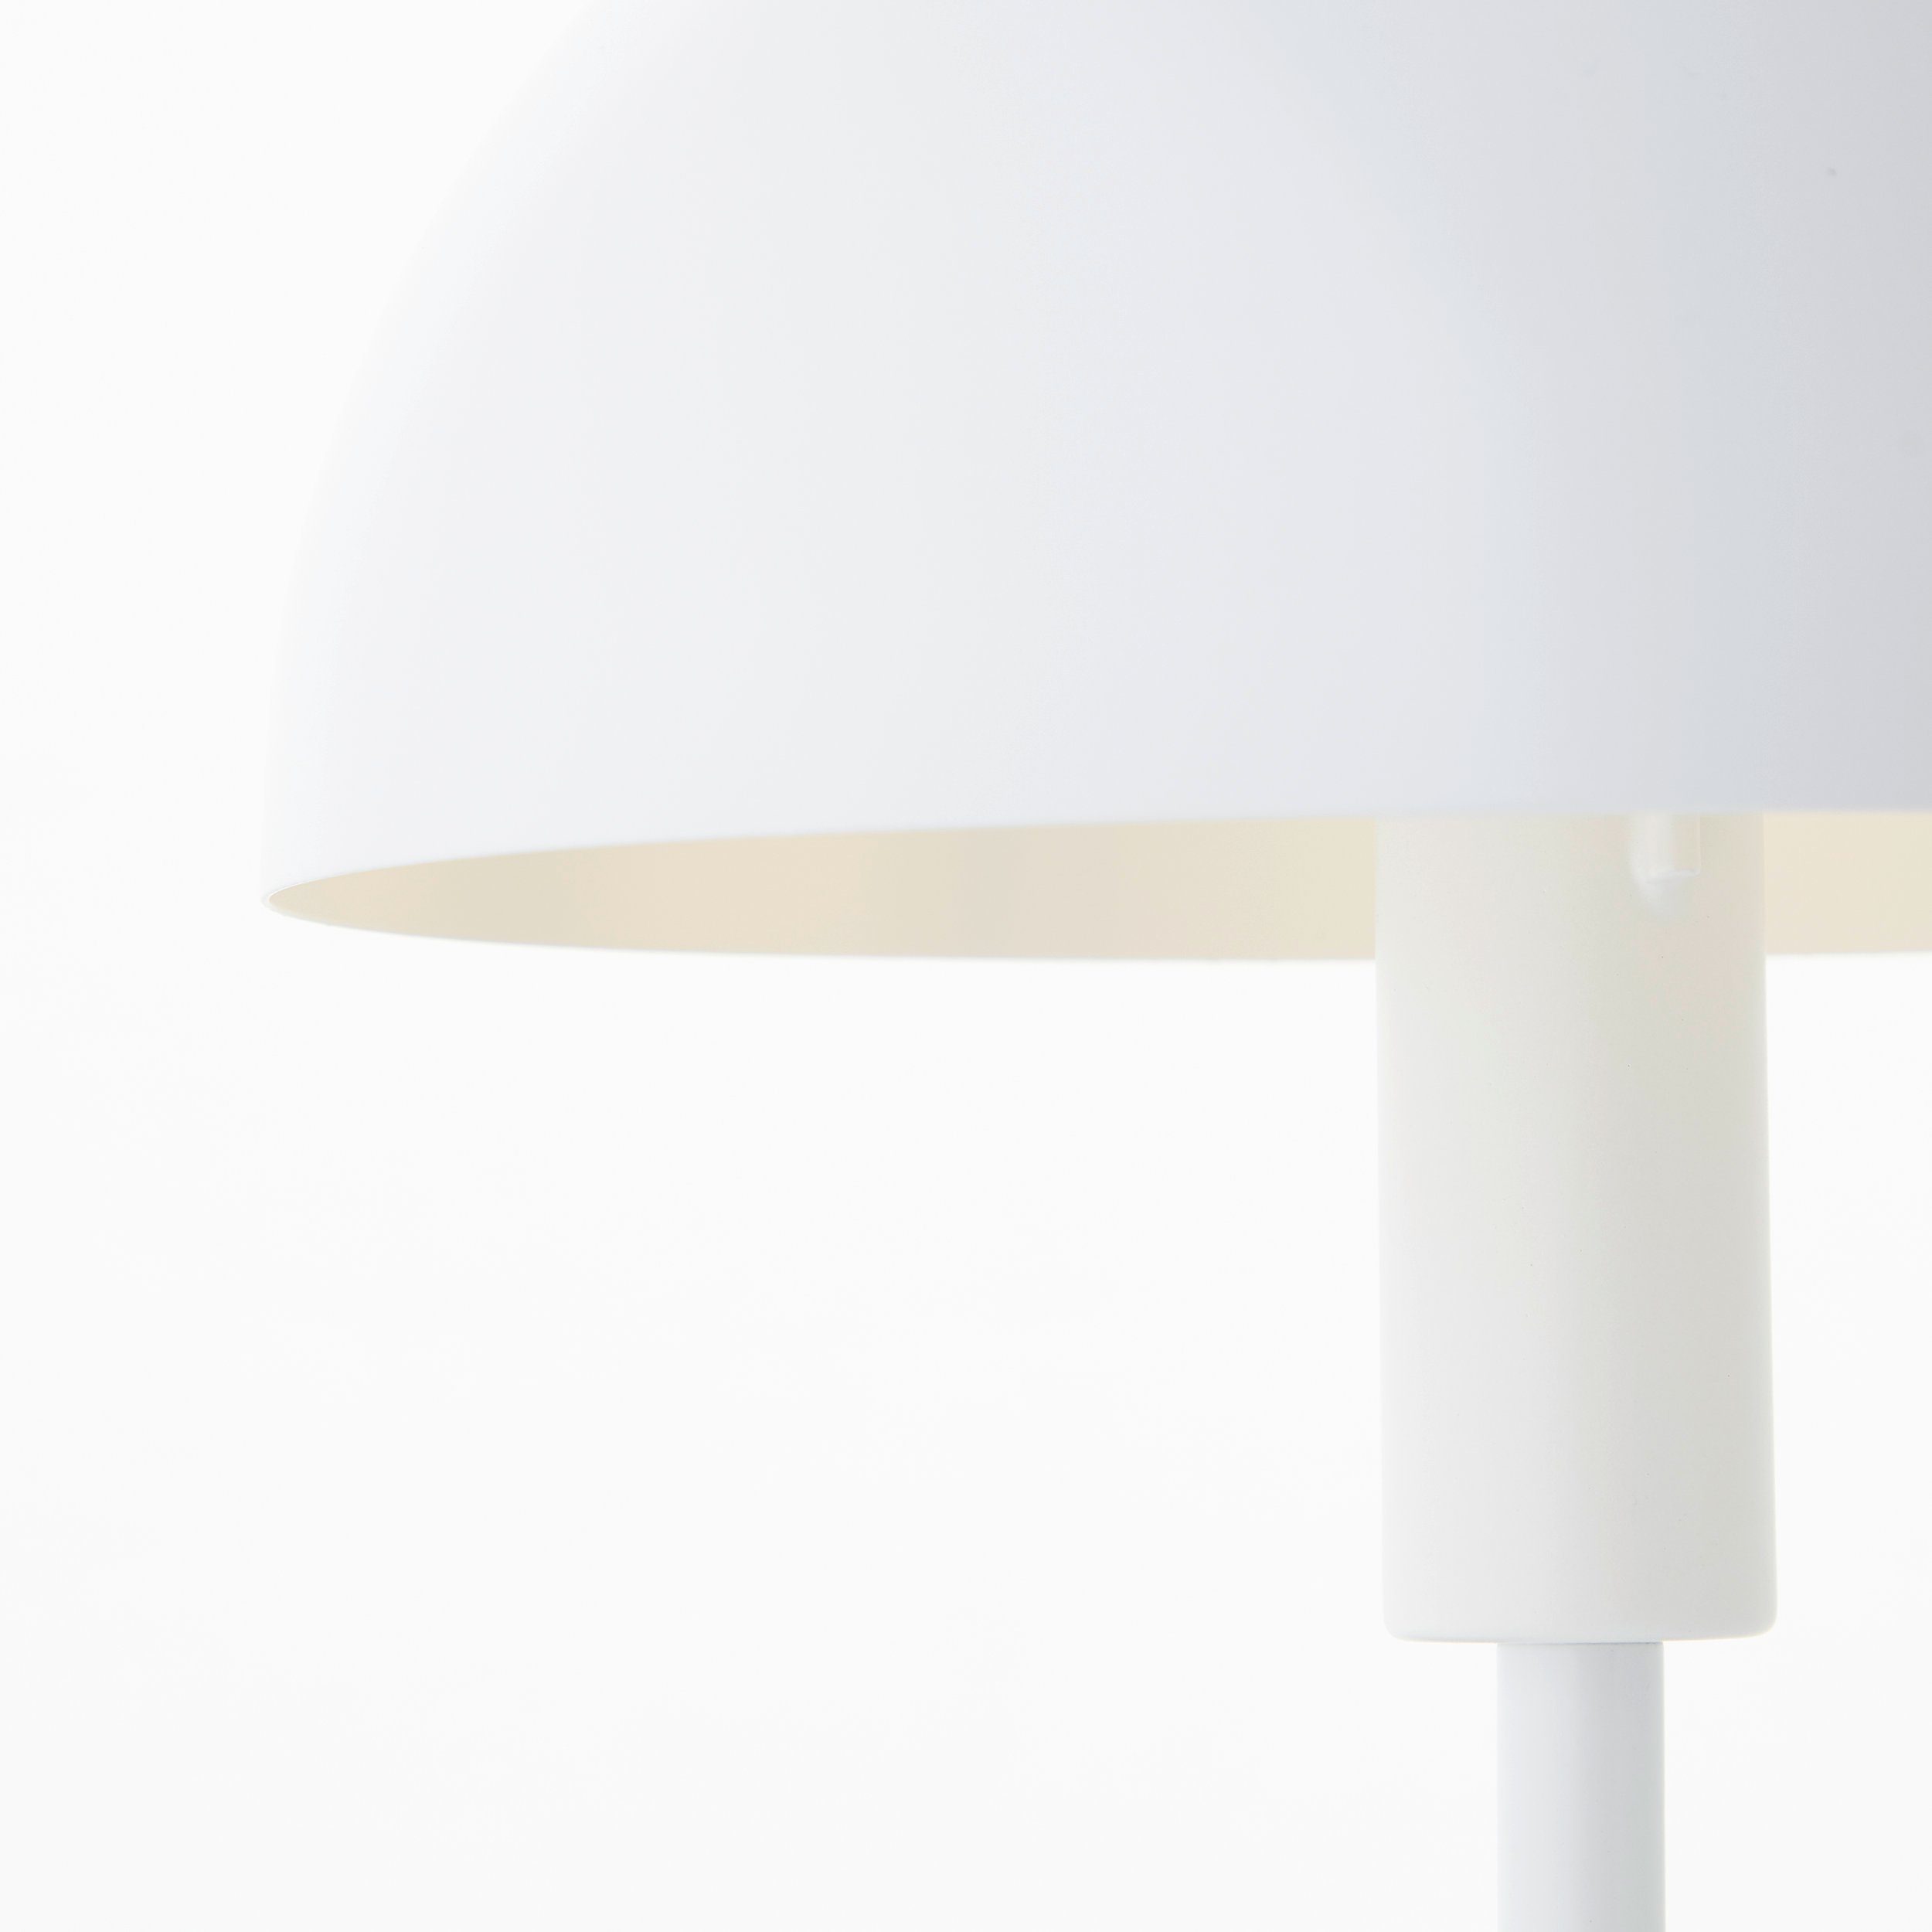 Lightbox Tischleuchte, ohne Leuchtmittel, Pilz-Tischleuchte, cm Höhe, E14, weiß/silberfarben Metall, 36